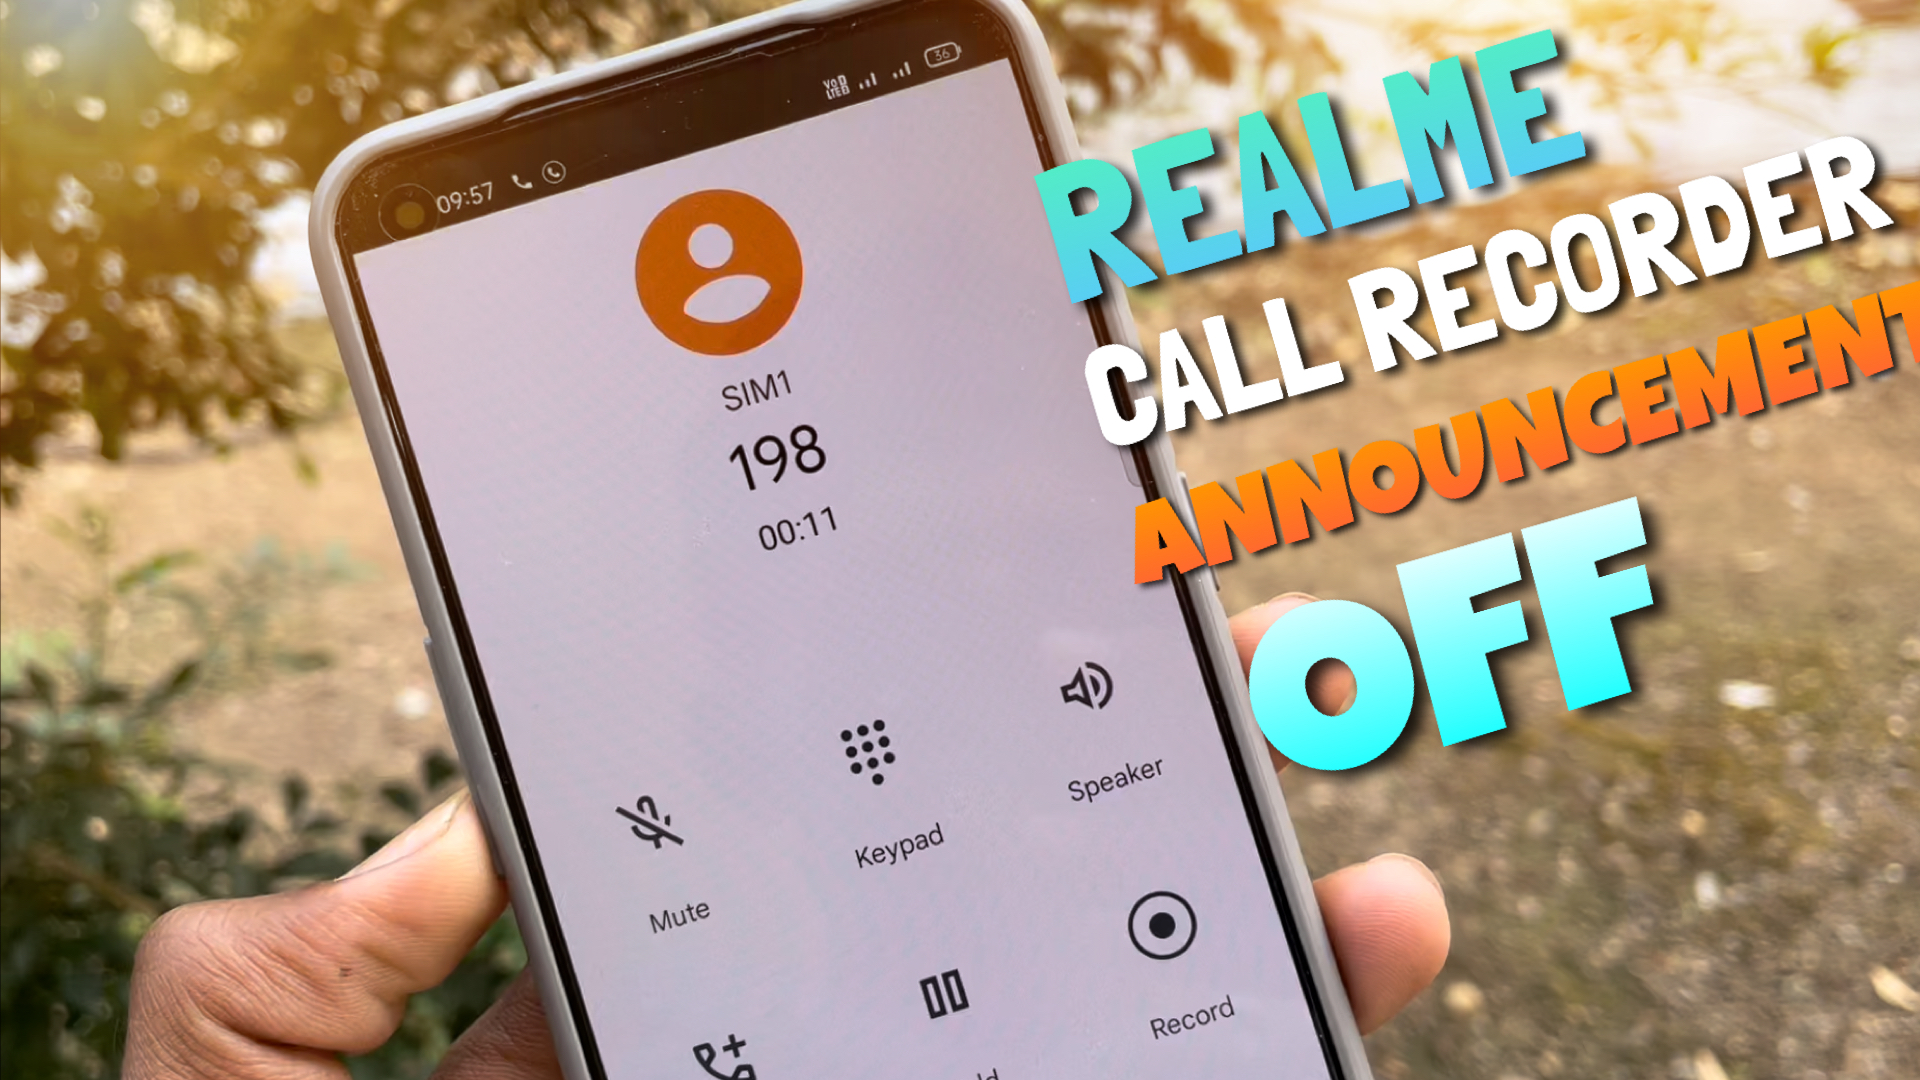 Realme call recorder announcementoff